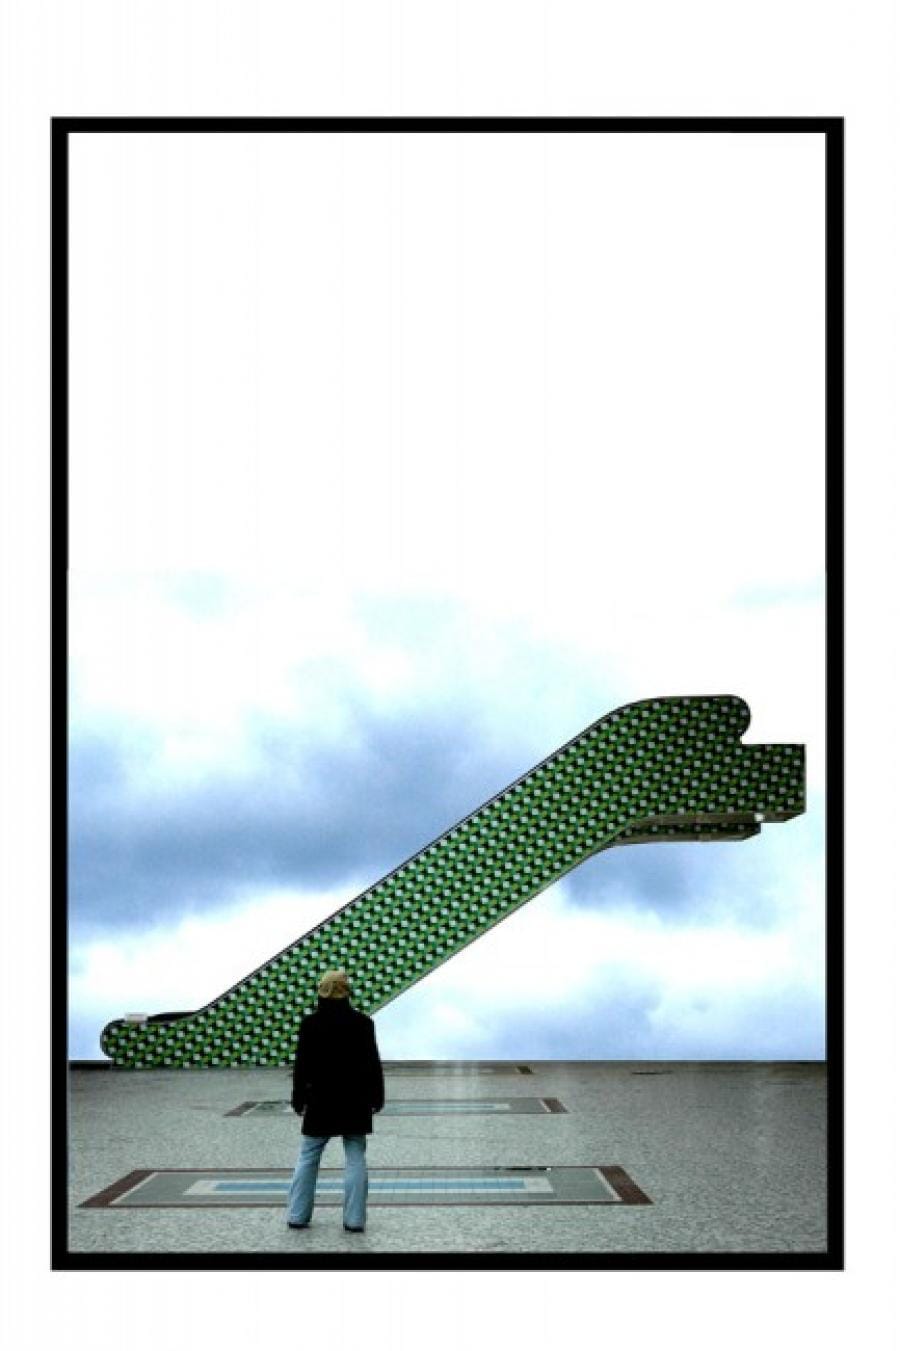 Kunst: zonder titel, 2004 (1) van kunstenaar Elke Hesselink